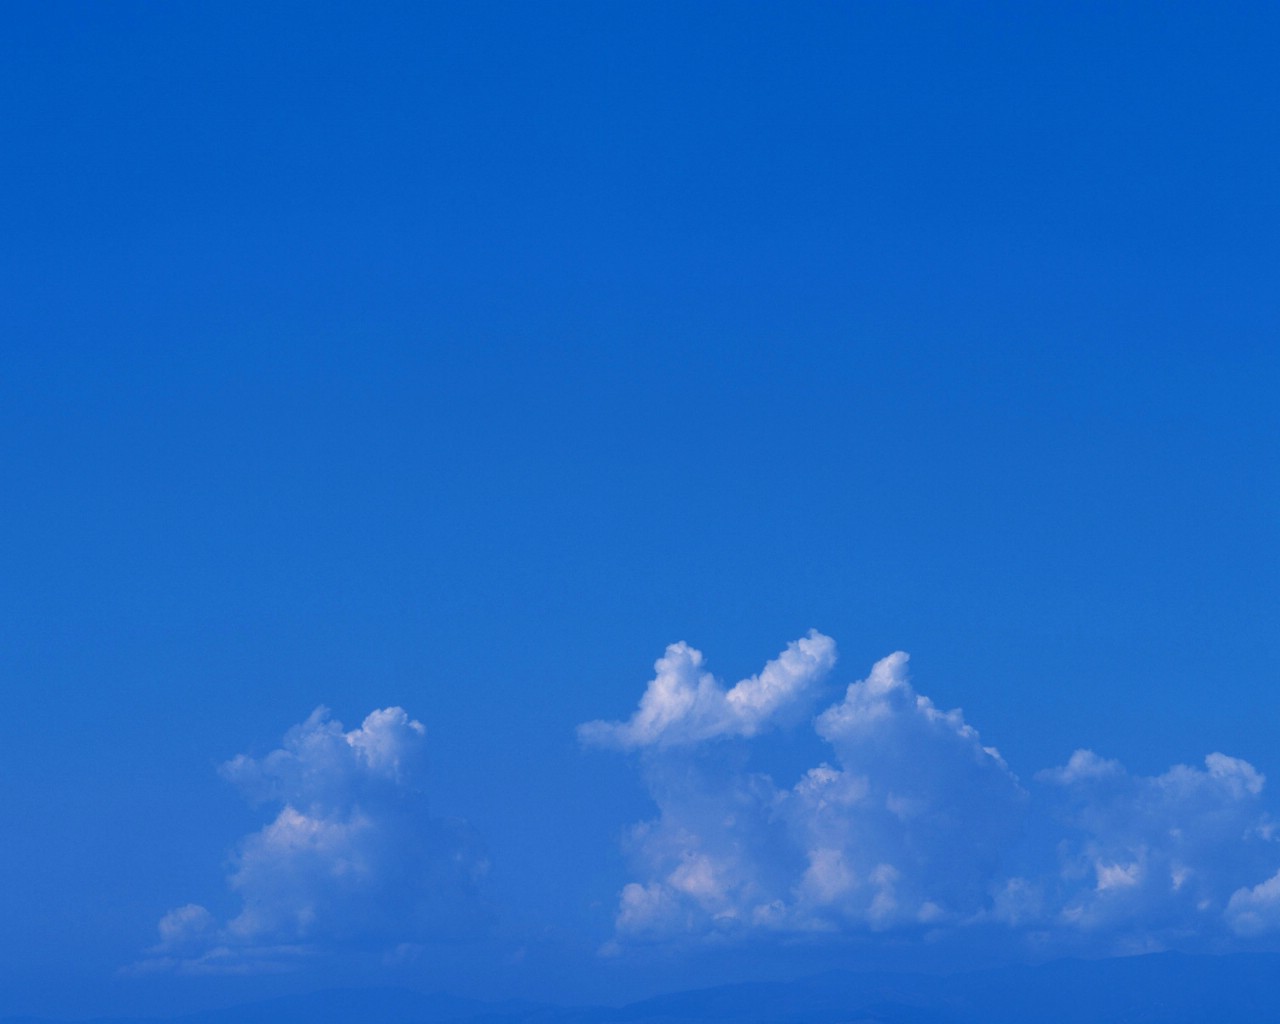 壁纸1280x1024 天空白云图片 天空云彩壁纸 蔚蓝天空-蓝天白云壁纸壁纸 蔚蓝天空-蓝天白云壁纸图片 蔚蓝天空-蓝天白云壁纸素材 风景壁纸 风景图库 风景图片素材桌面壁纸